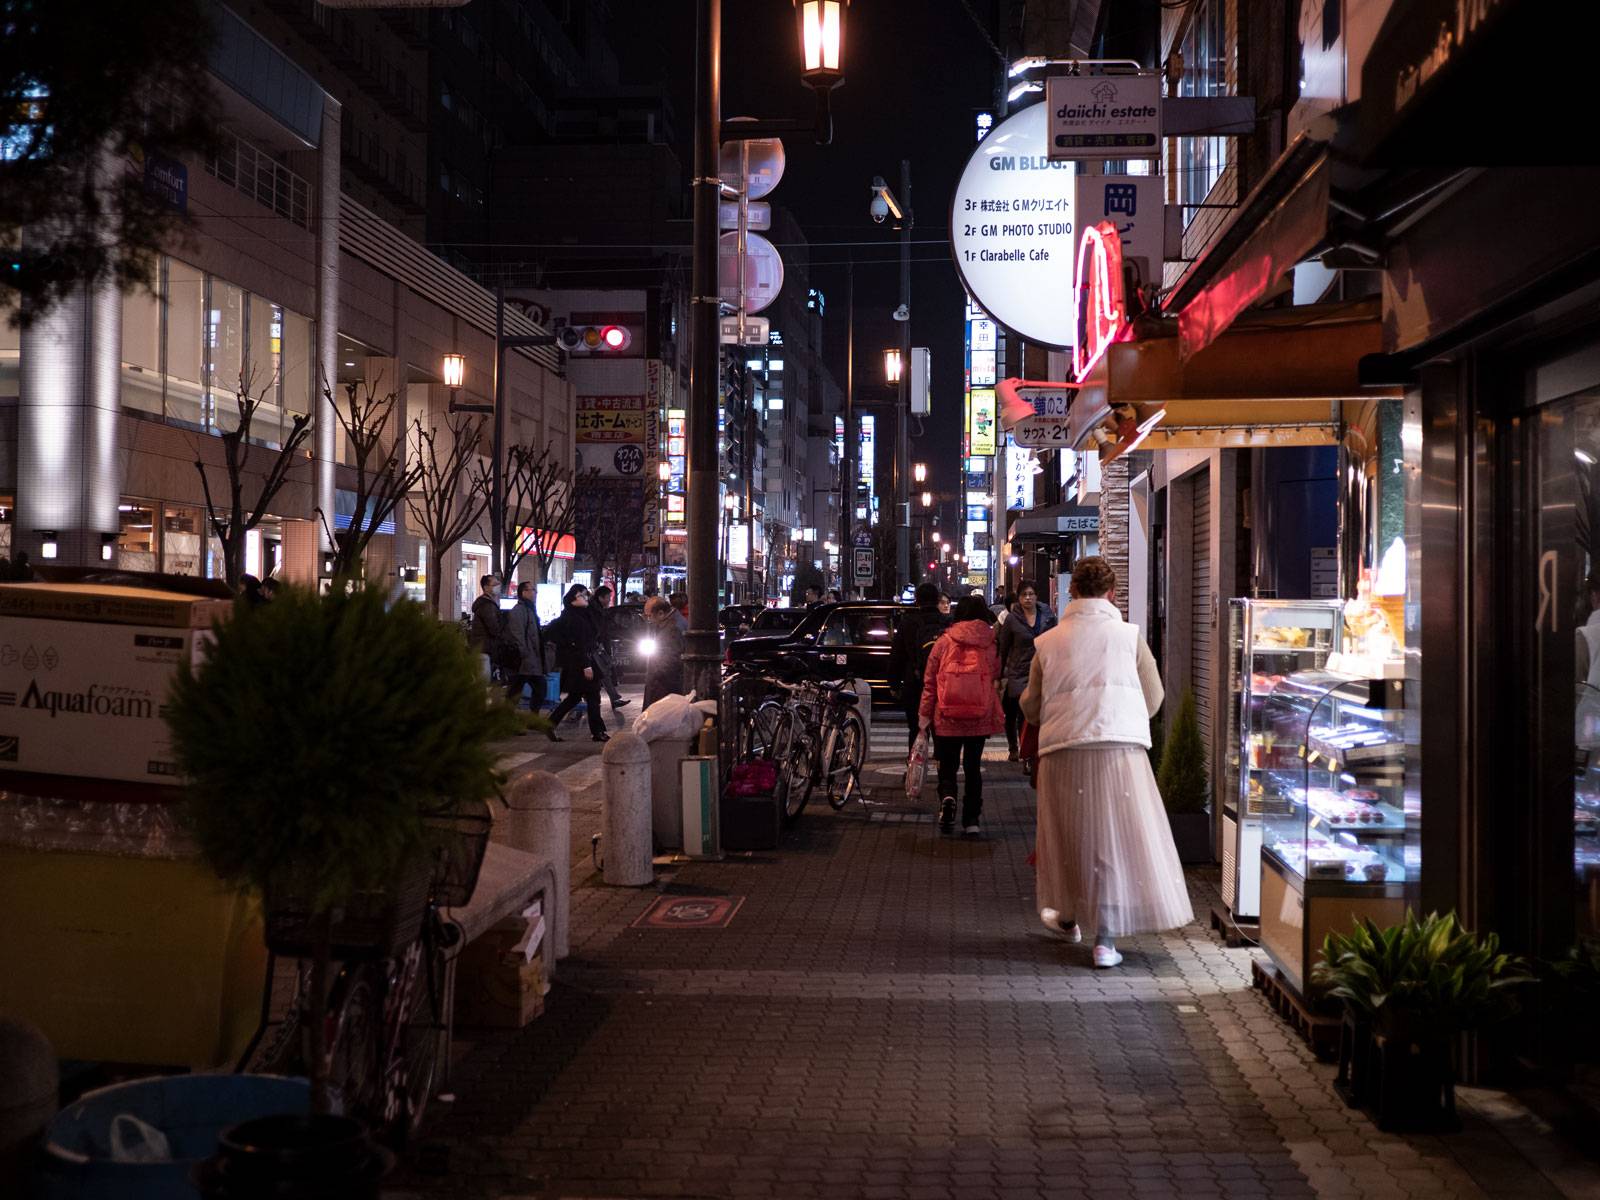 Street sidewalk at night